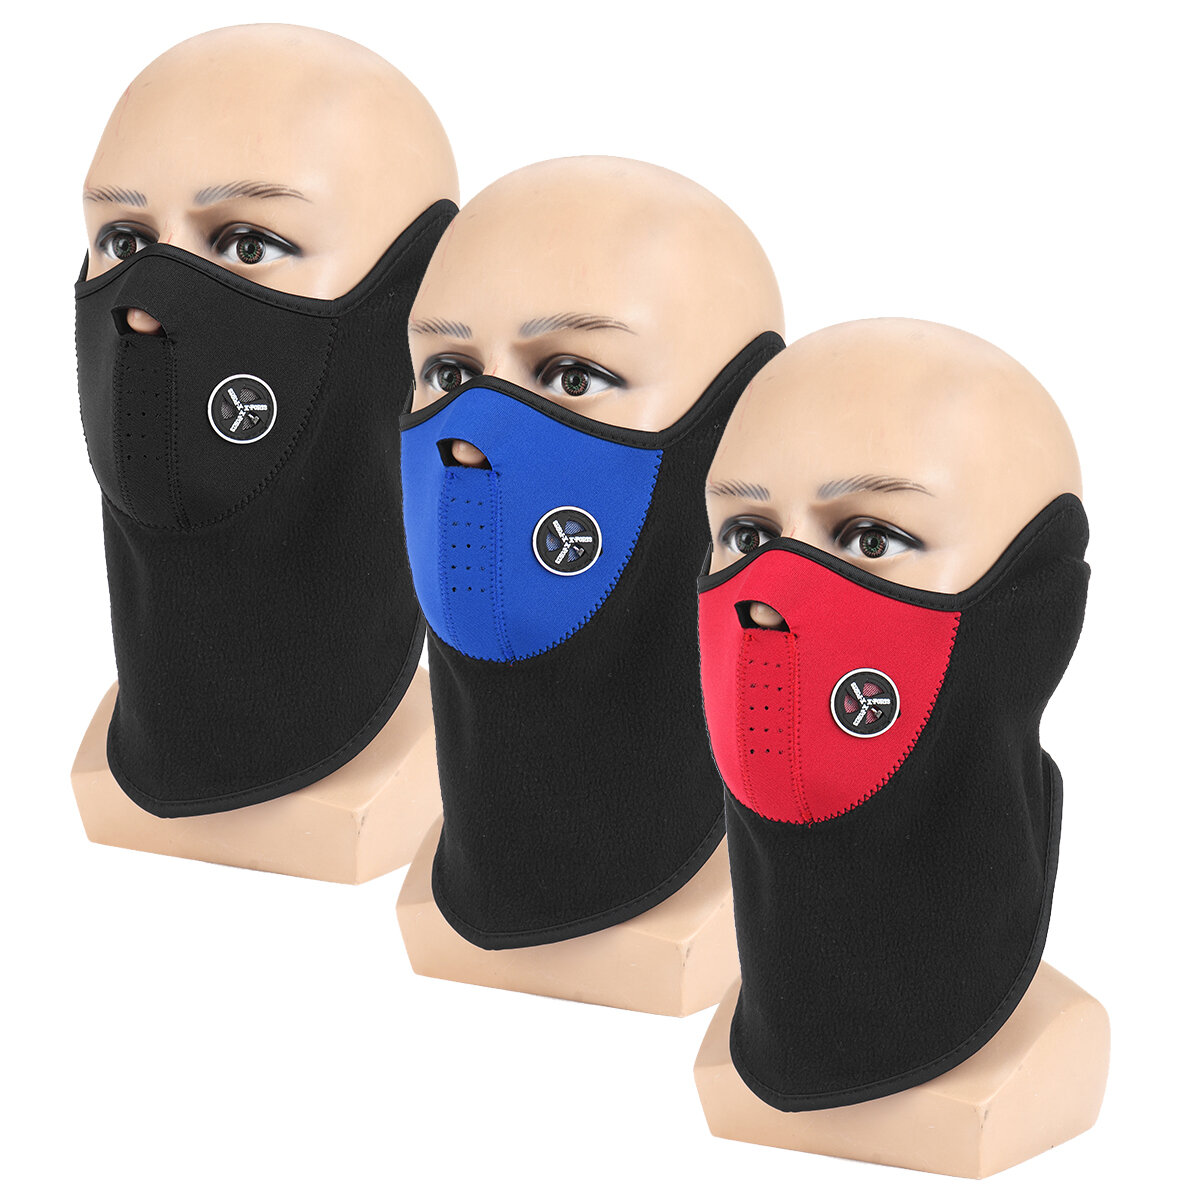 Máscara de media cara a prueba de viento para invierno en 3 colores, con cuello grueso para proteger del frío, ideal para esquiar, ciclismo y otros deportes de invierno al aire libre.